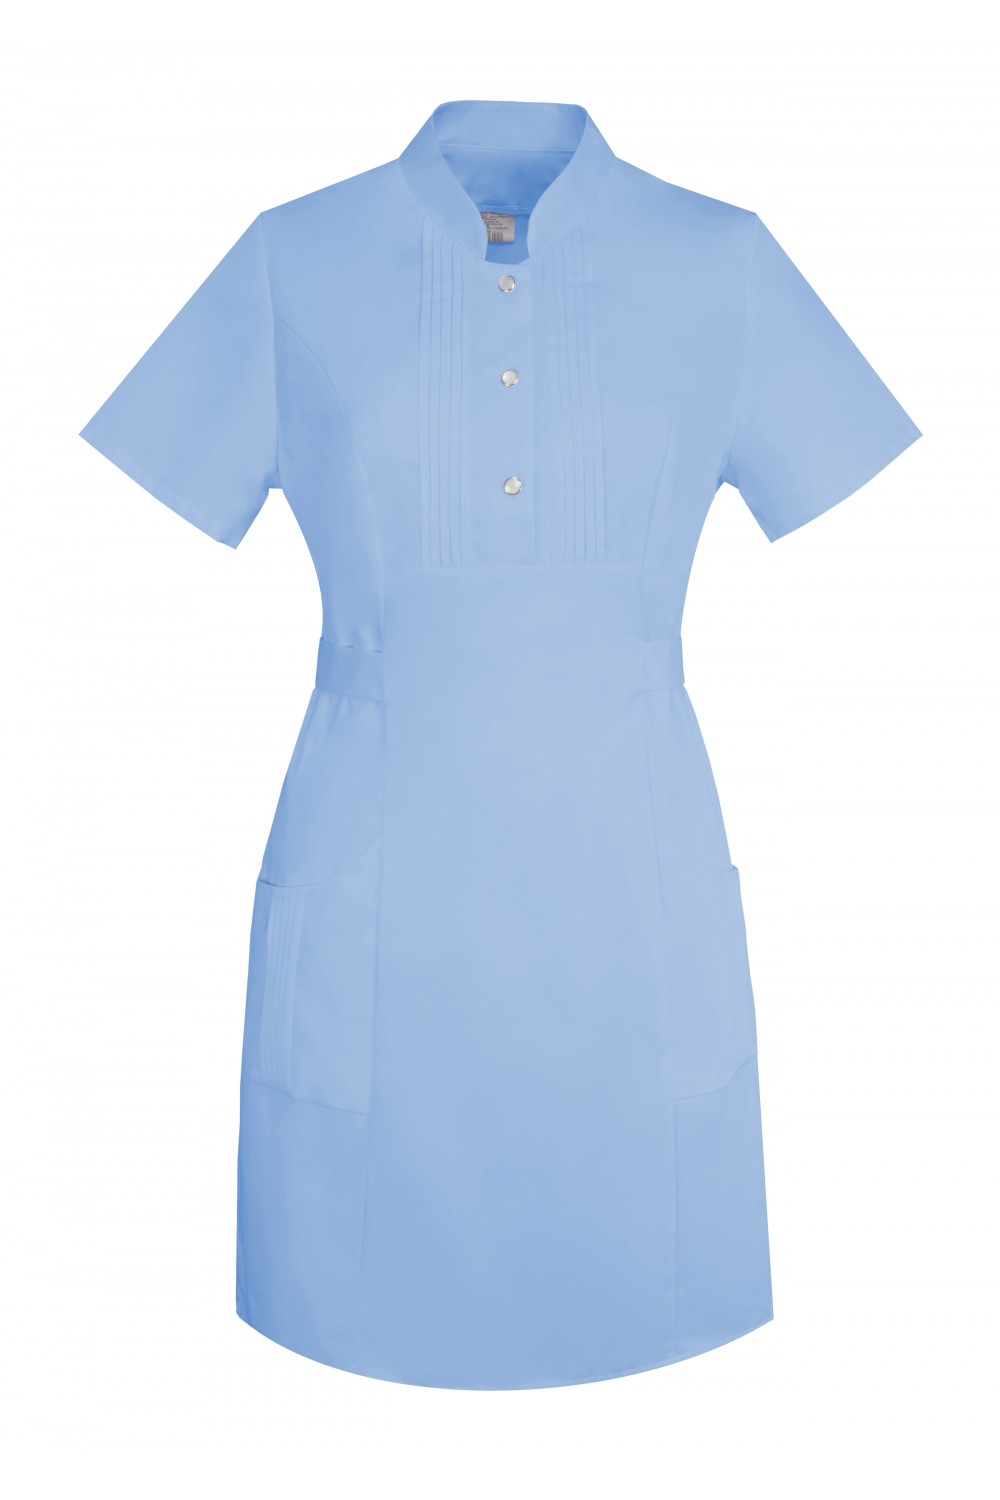 M-343 Fartuch damski sukienka medyczna kosmetyczna kolor błękit